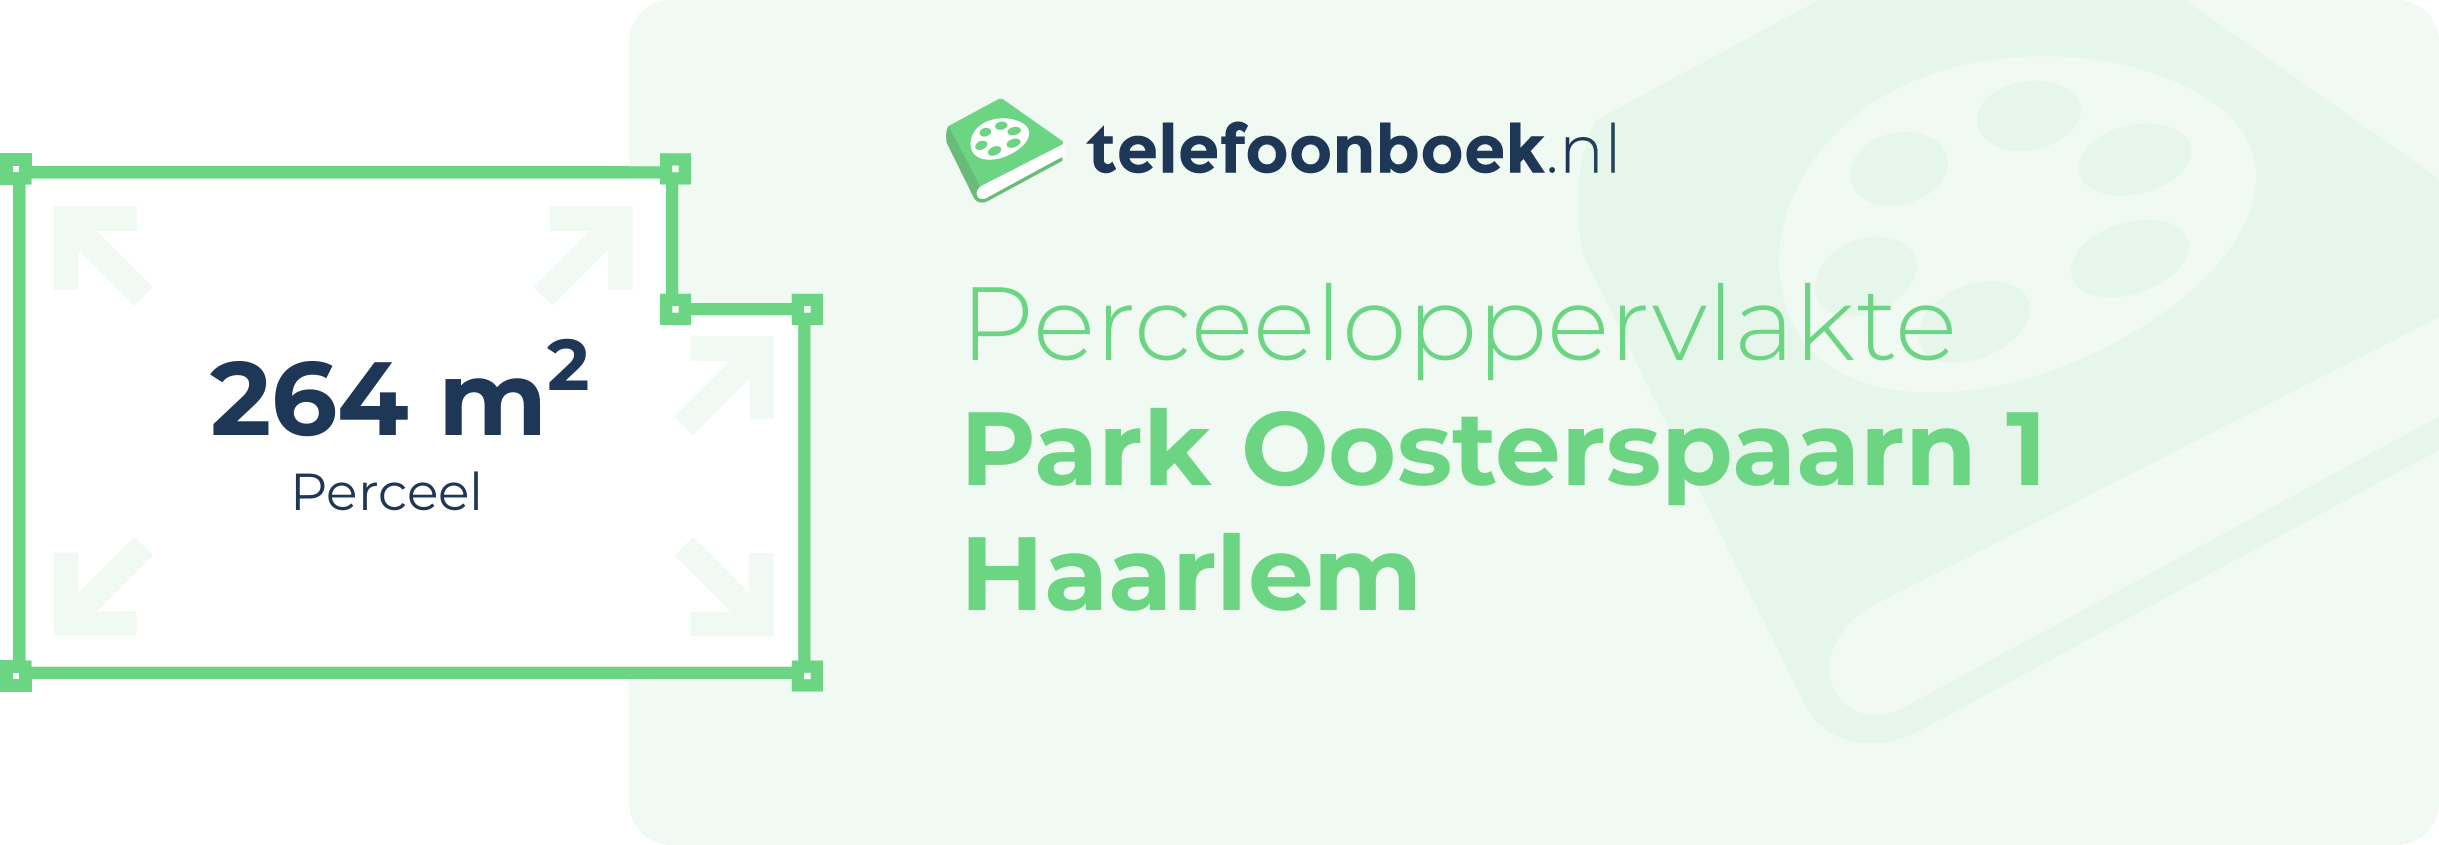 Perceeloppervlakte Park Oosterspaarn 1 Haarlem